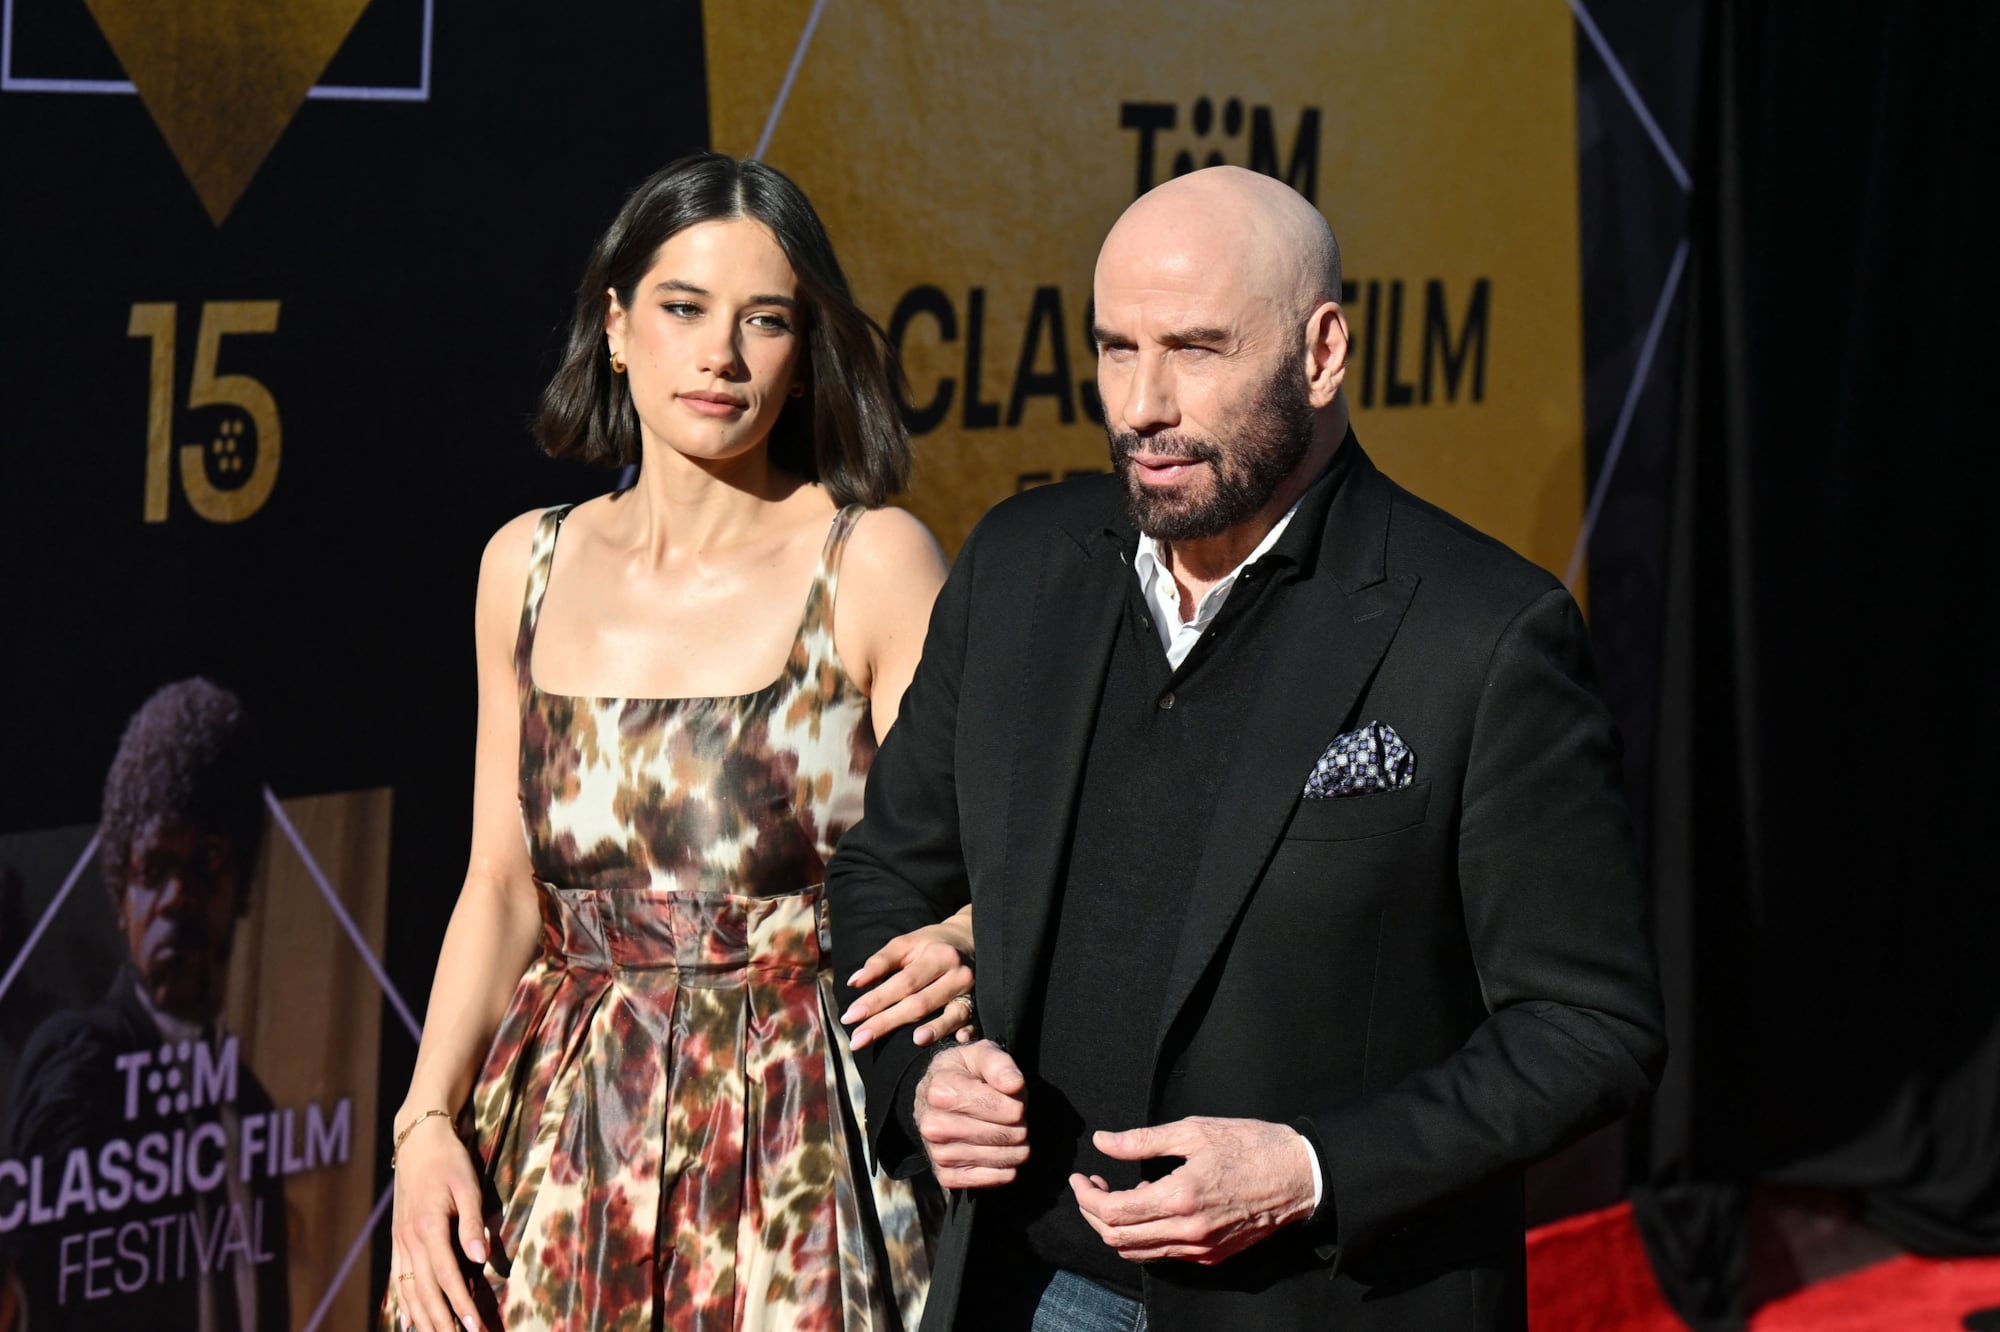 Travolta llegó a la alfombra roja de la mano de su hija, la también actriz Ella Bleu Travolta. La joven lució un vestido floral con escote recto y breteles